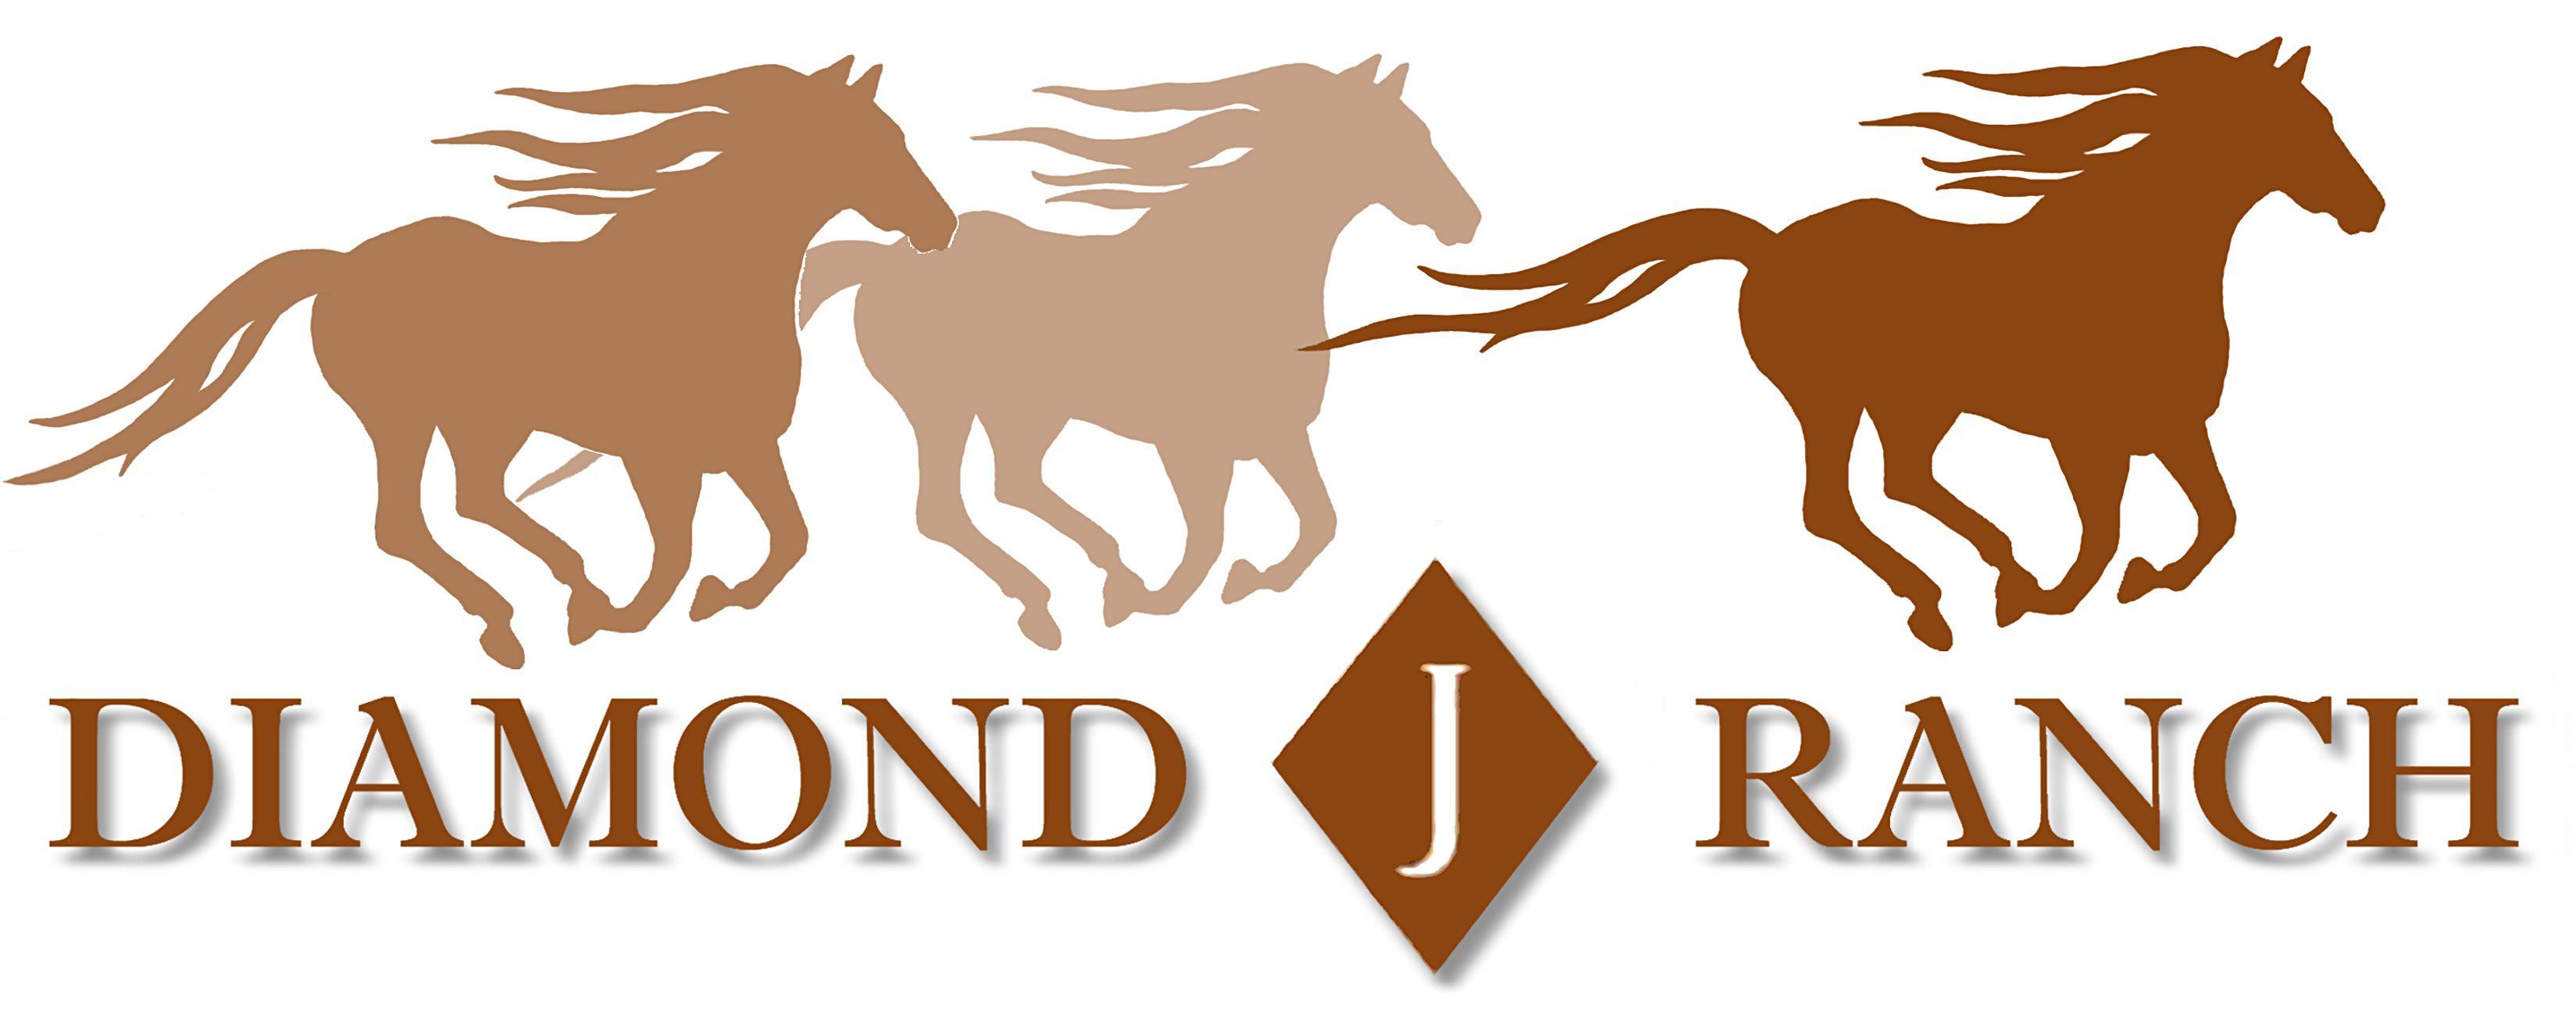 Dimond J Logo - Gallery J Ranch